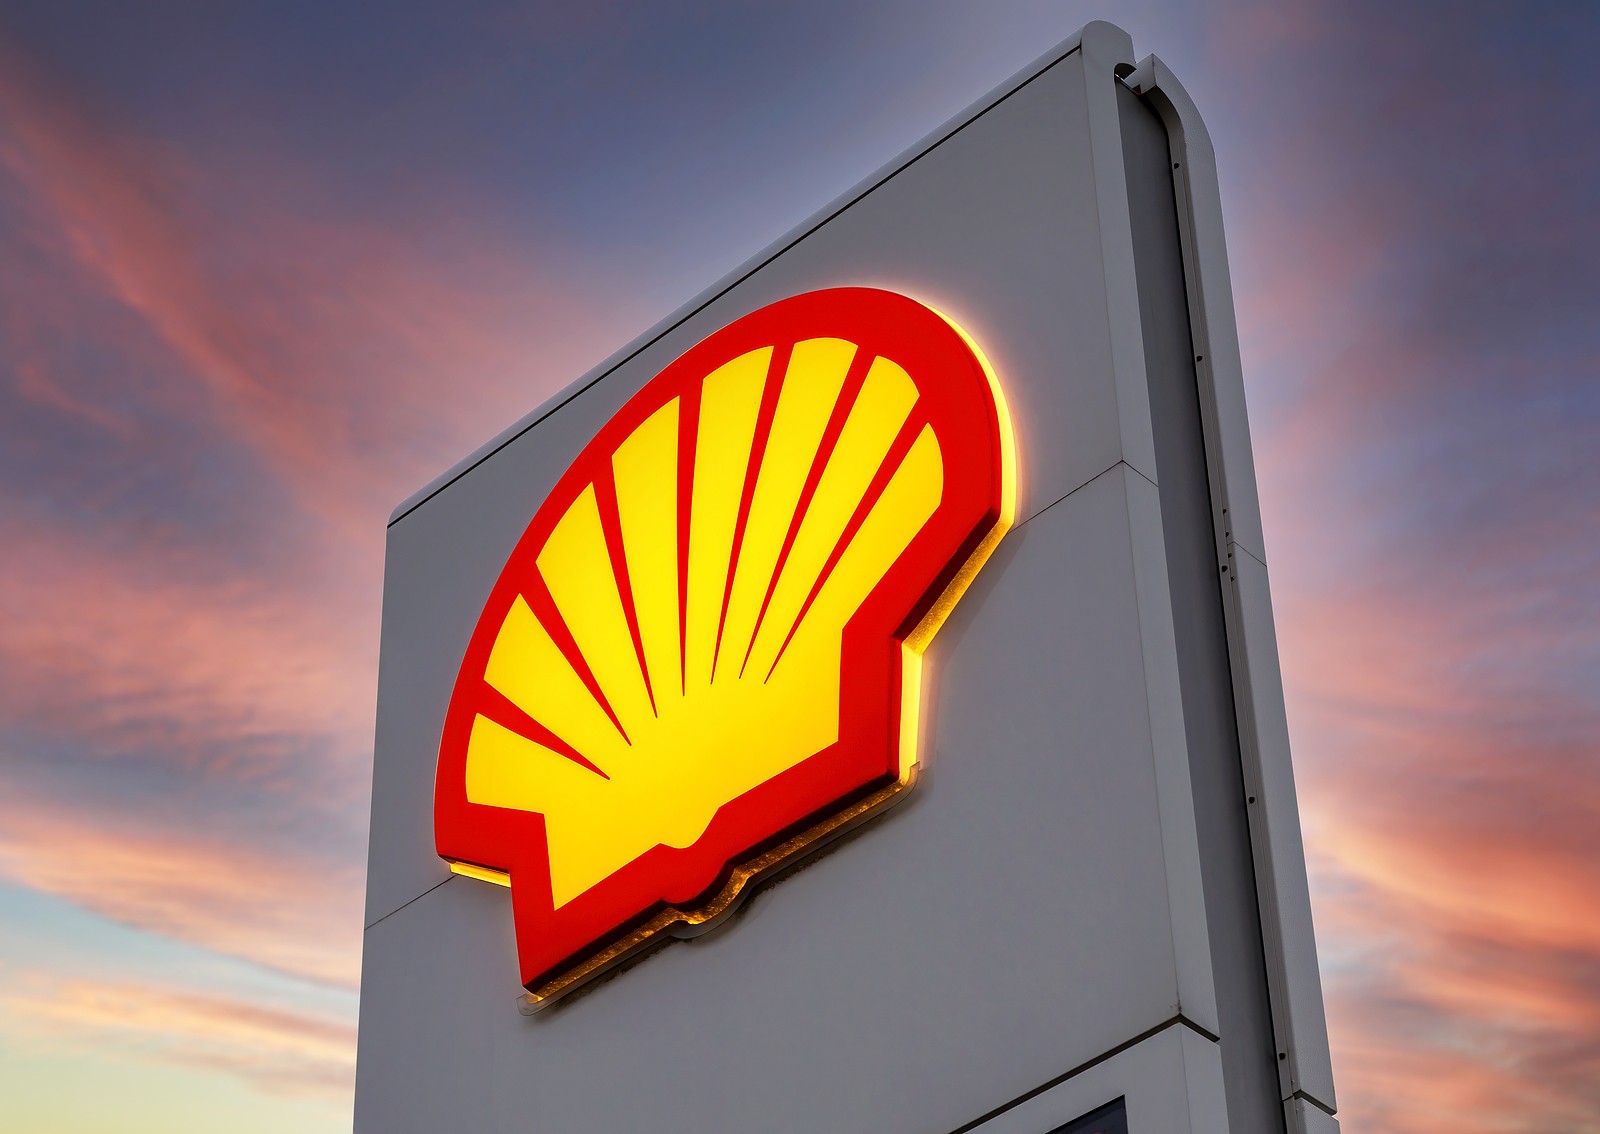 Shell potrdil vdor in krajo osebnih podatkov s strani kriminalne “Ransomware” skupine Cl0p